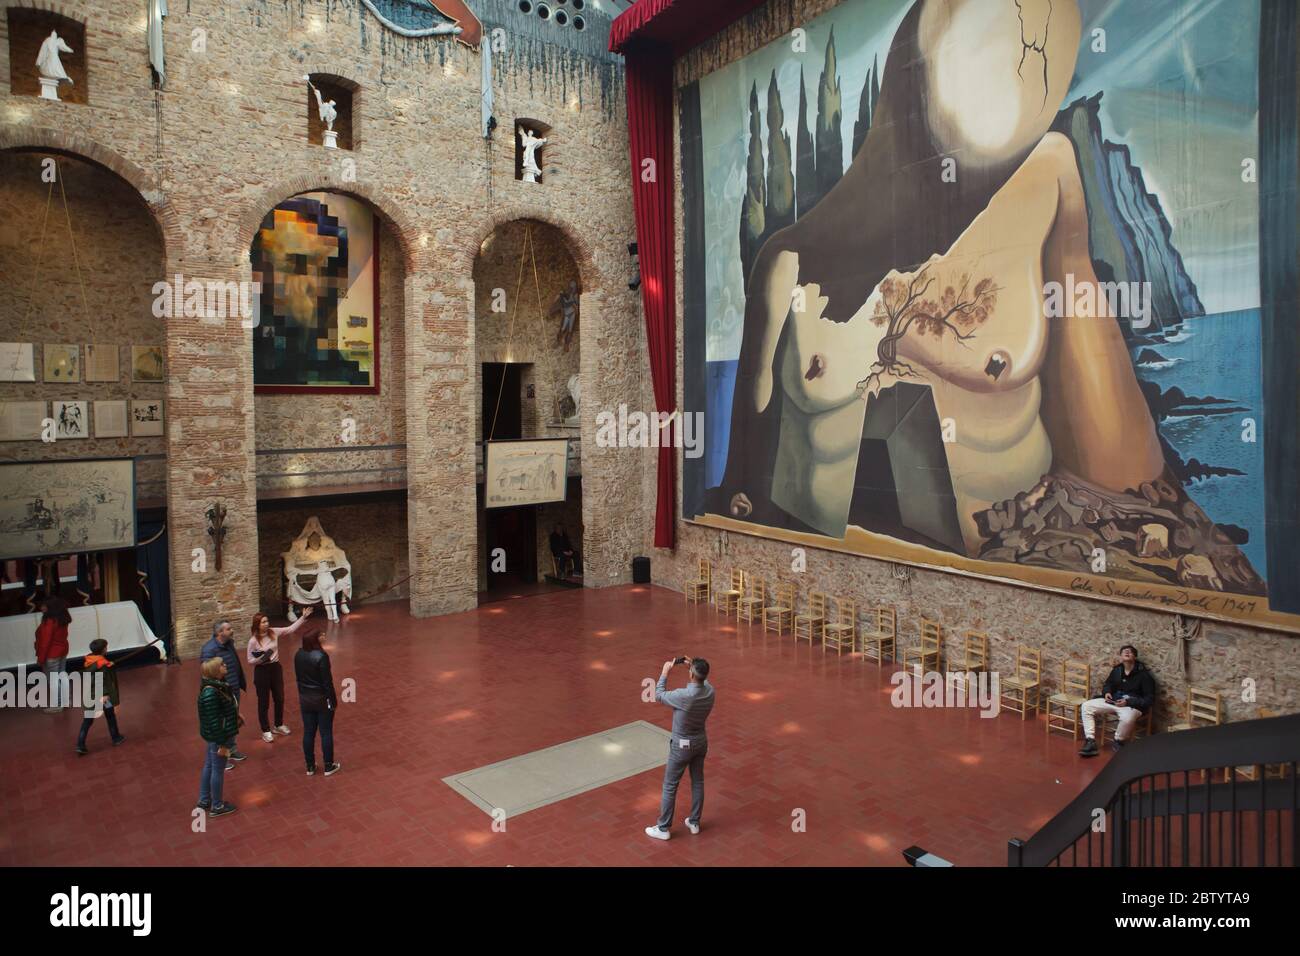 Les visiteurs séjournent à côté de la tombe non marquée du peintre surréaliste espagnol Salvador Dalí dans la salle principale du théâtre et musée Salvador Dalí à Figueres, Catalogne, Espagne. L'immense toile de fond conçue par Salvador Dalí pour le ballet Labyrinth (1941) est vue dans le fond à droite. La peinture de Salvador Dalí intitulée 'Lincoln in Dalivision' est vue à gauche. Banque D'Images